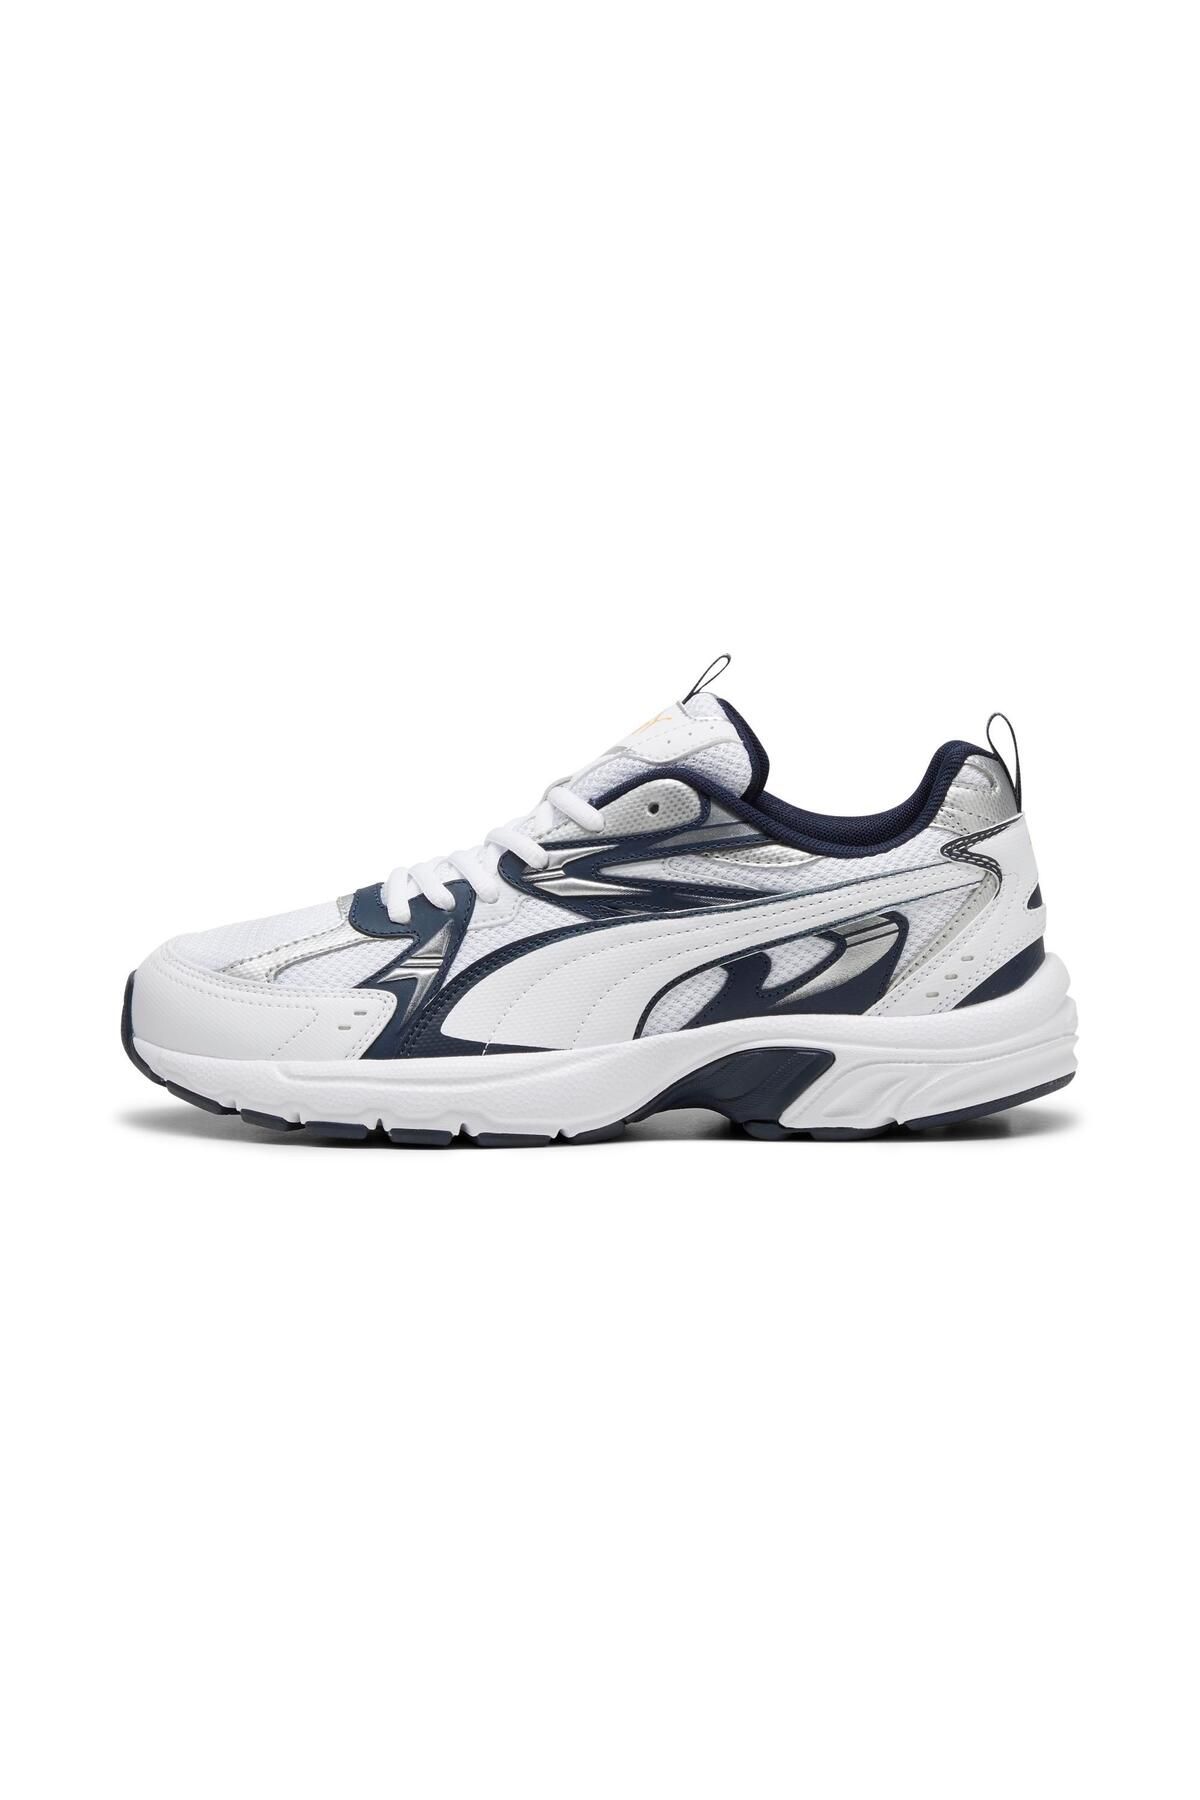 Puma Erkek Sneaker Spor Yürüyüş Ayakkabı Milenio Tech 39232205